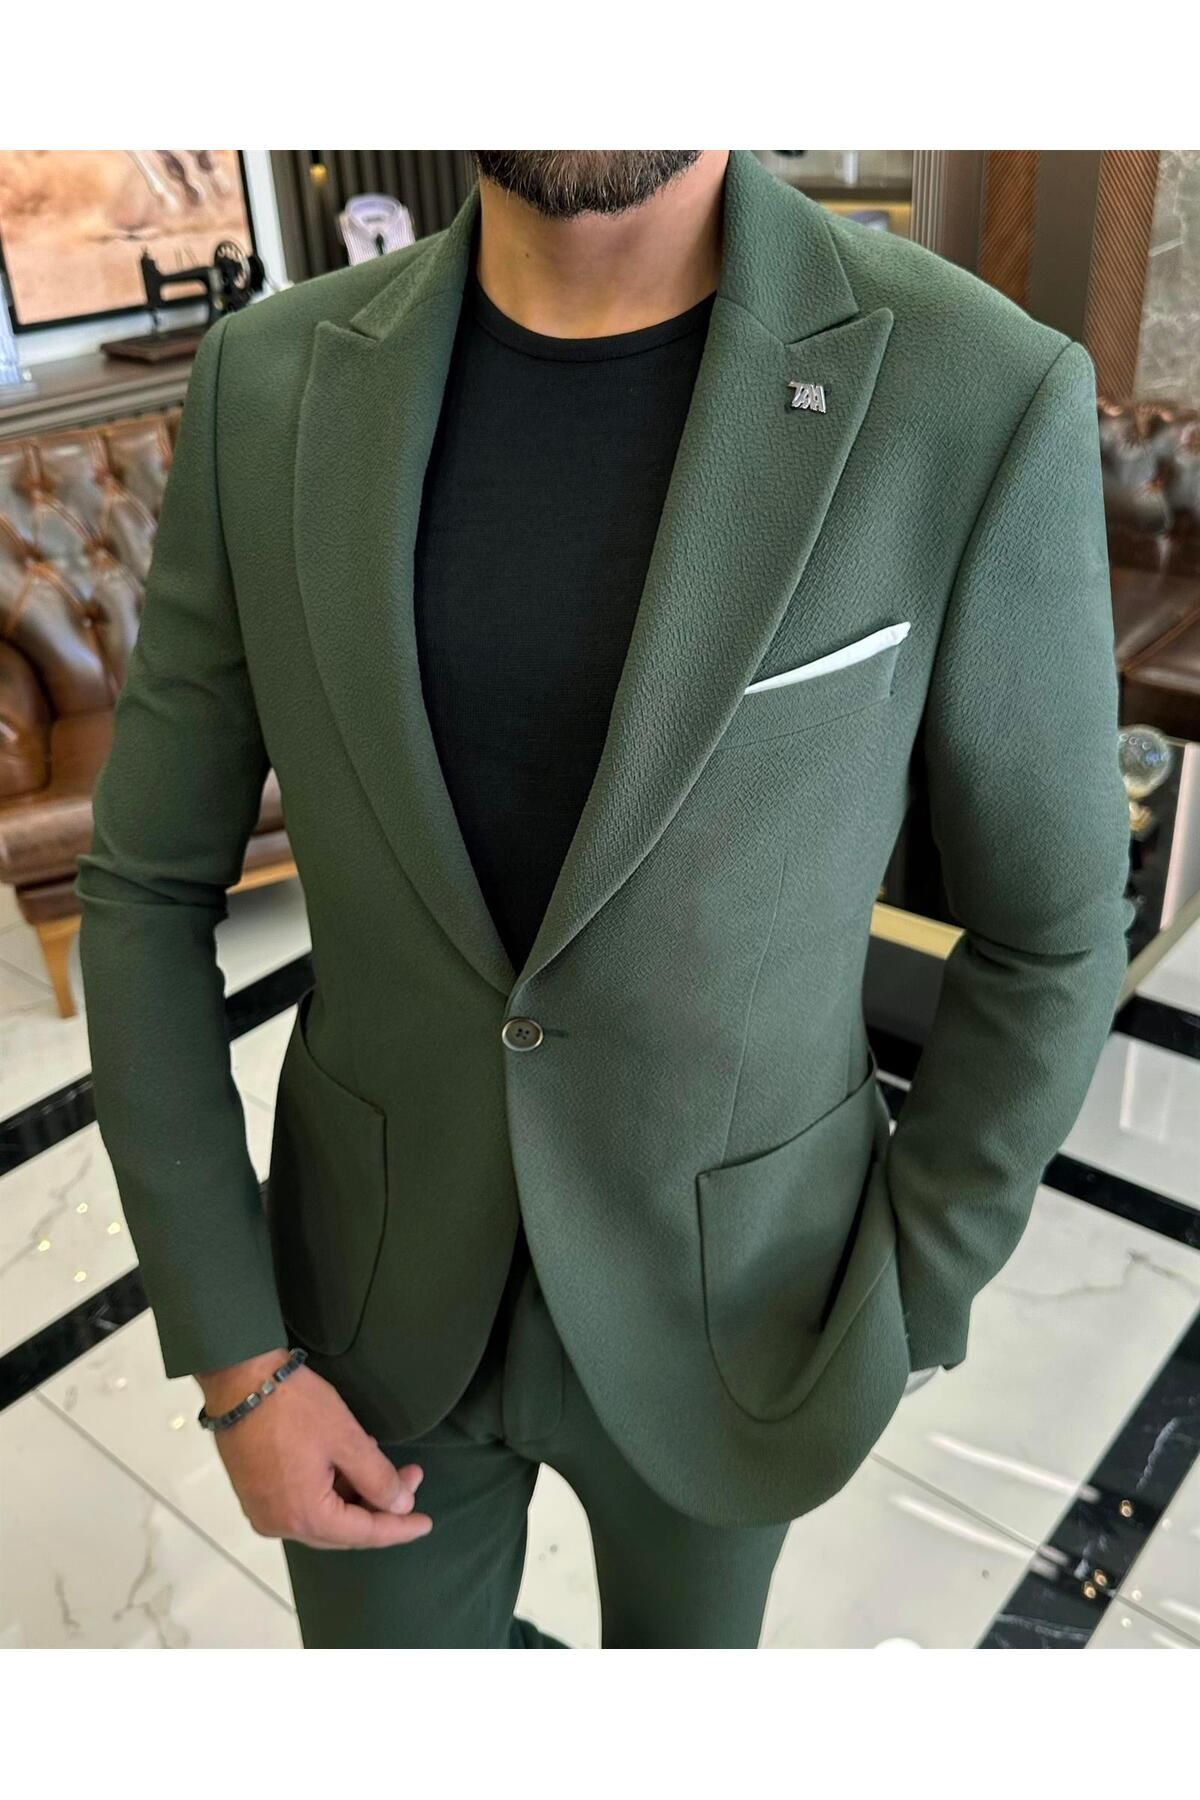 TerziAdemAltun İtalyan stil slim fit ceket pantolon takım elbise yeşil T10009